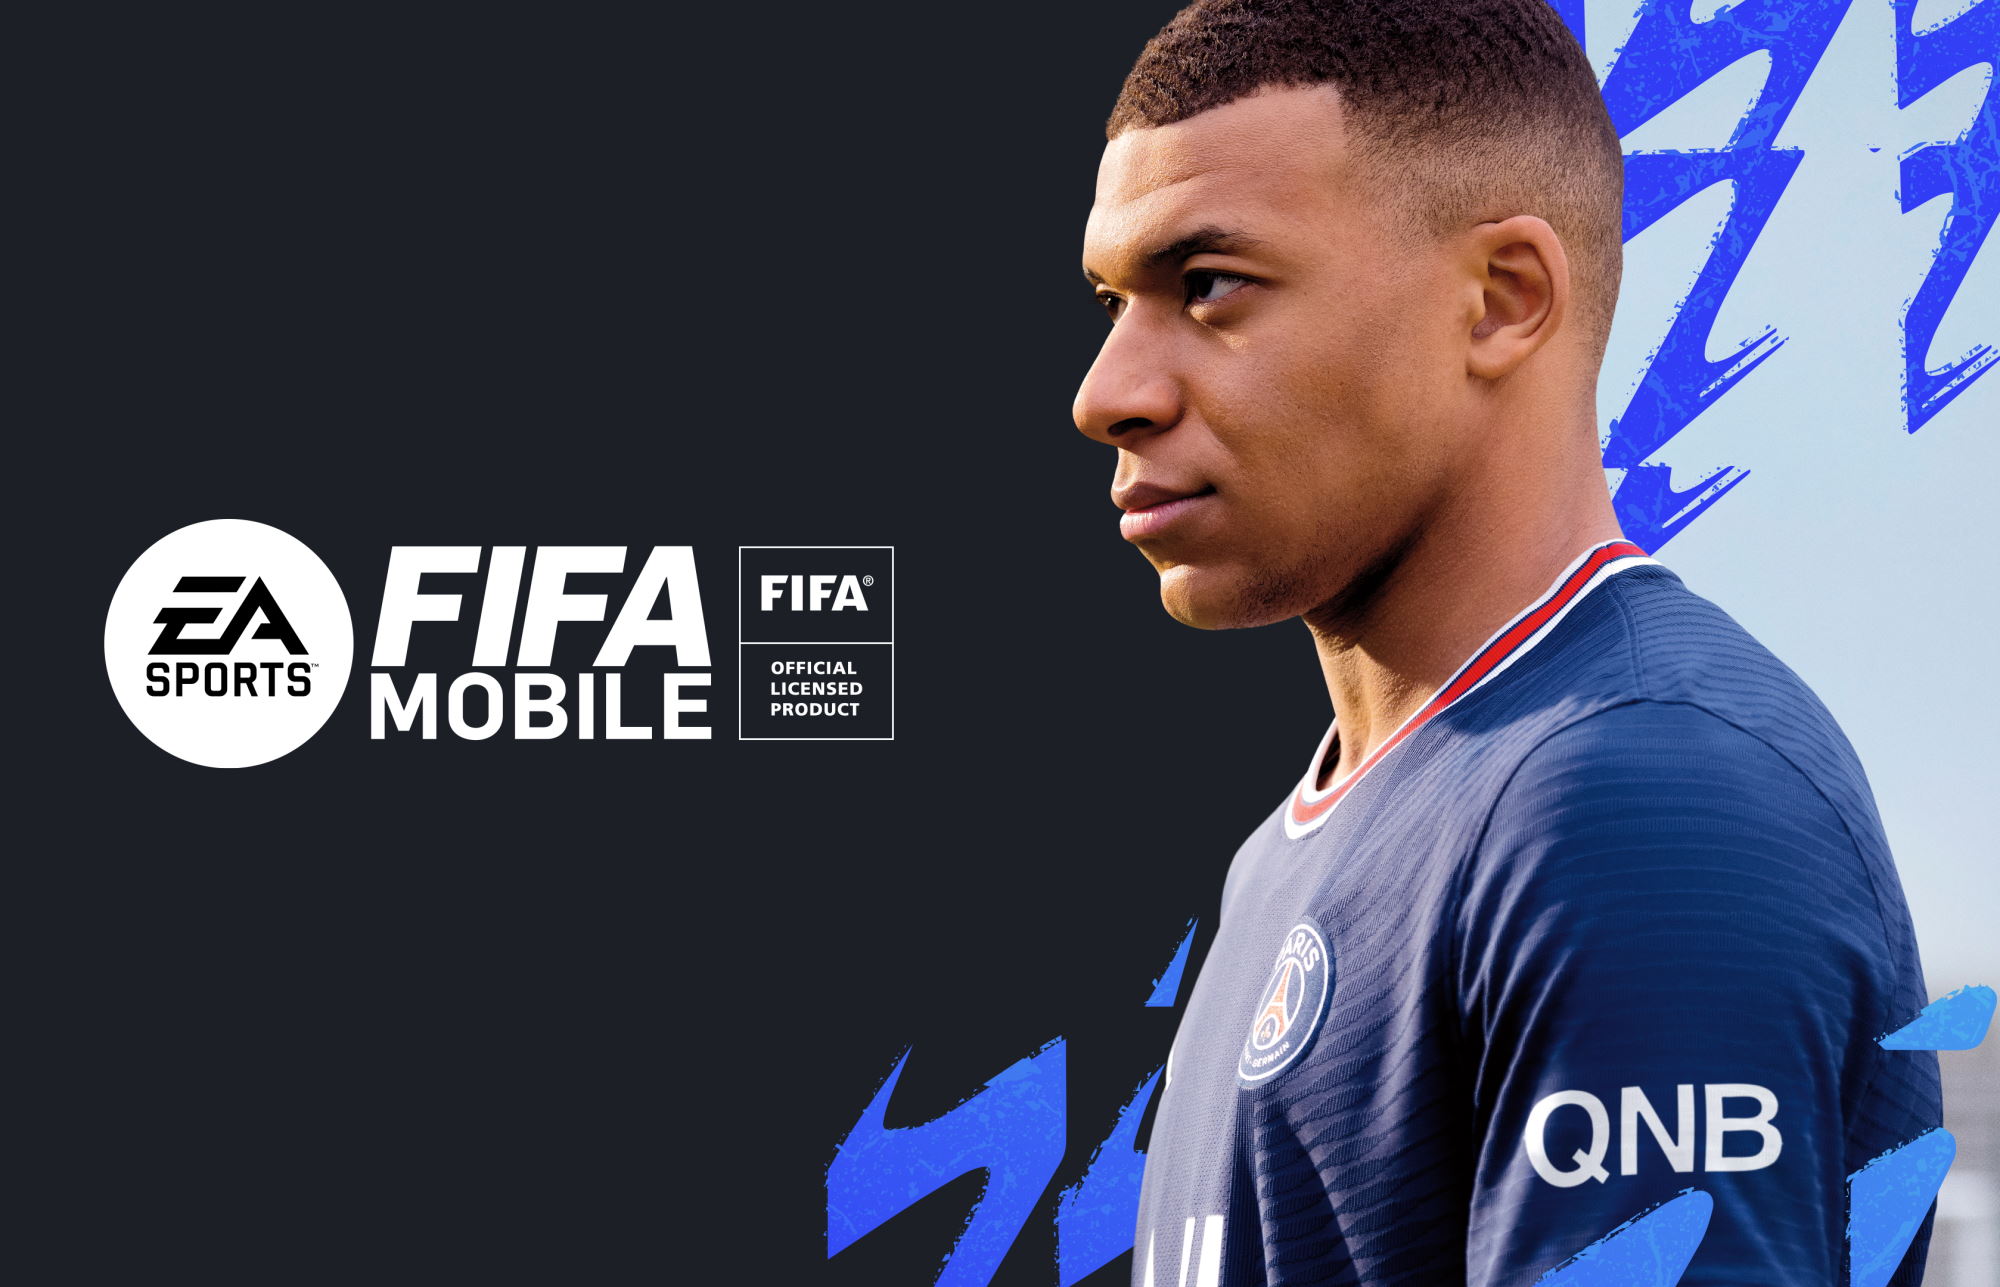 EA SPORTS FIFA Mobile